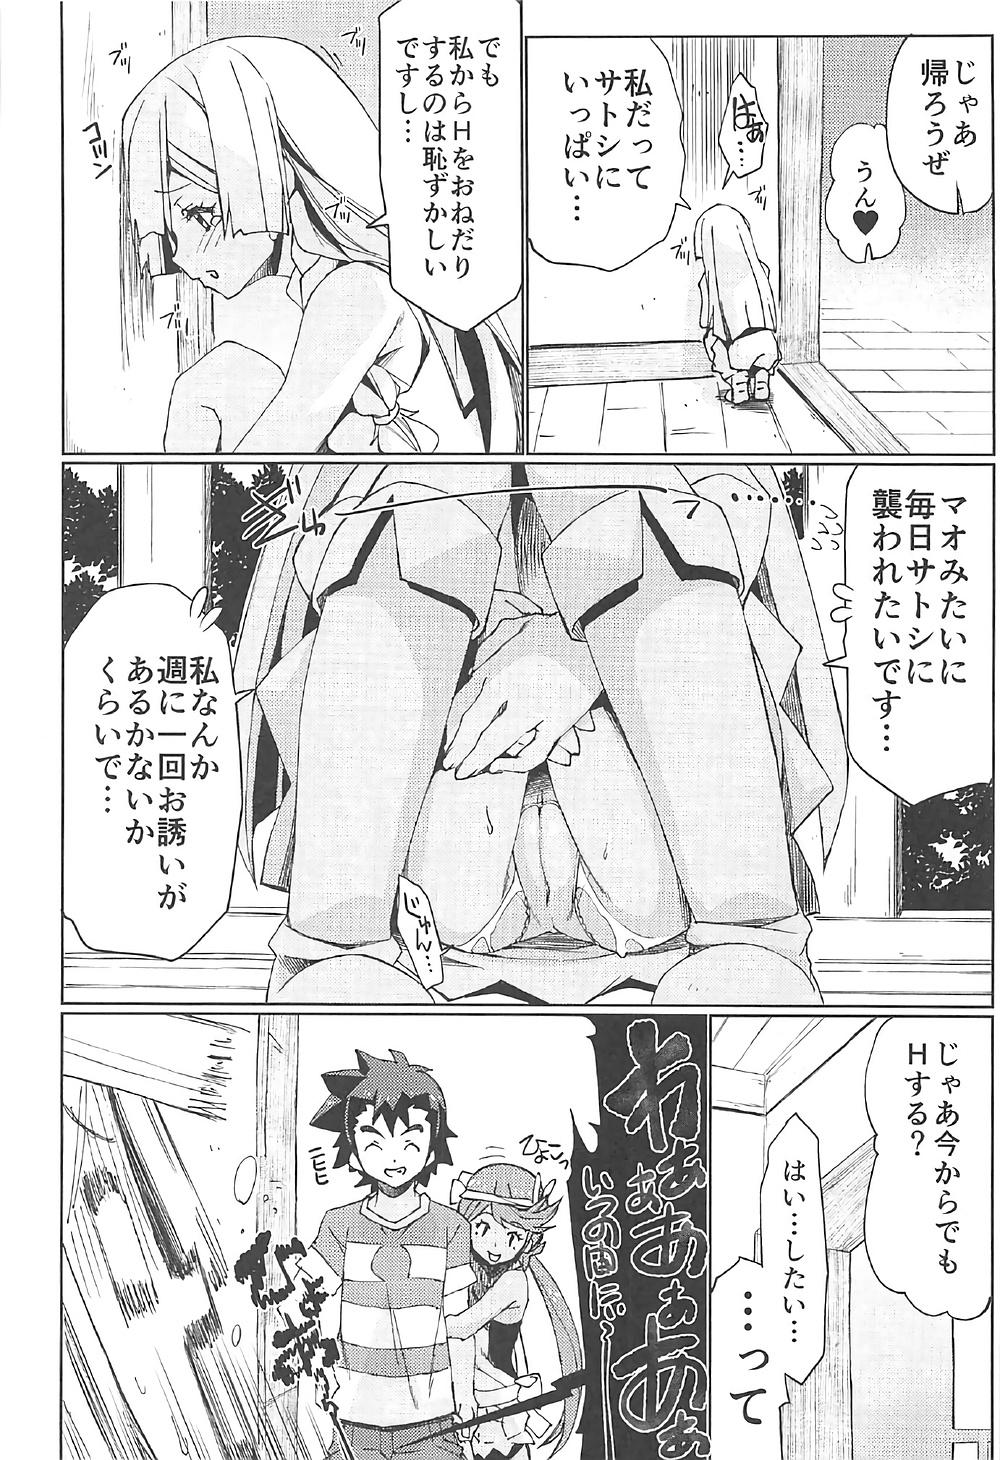 Leather Watashi ga sono Ki ni nareba Ronriteki ni! 2!! - Pokemon Thong - Page 9